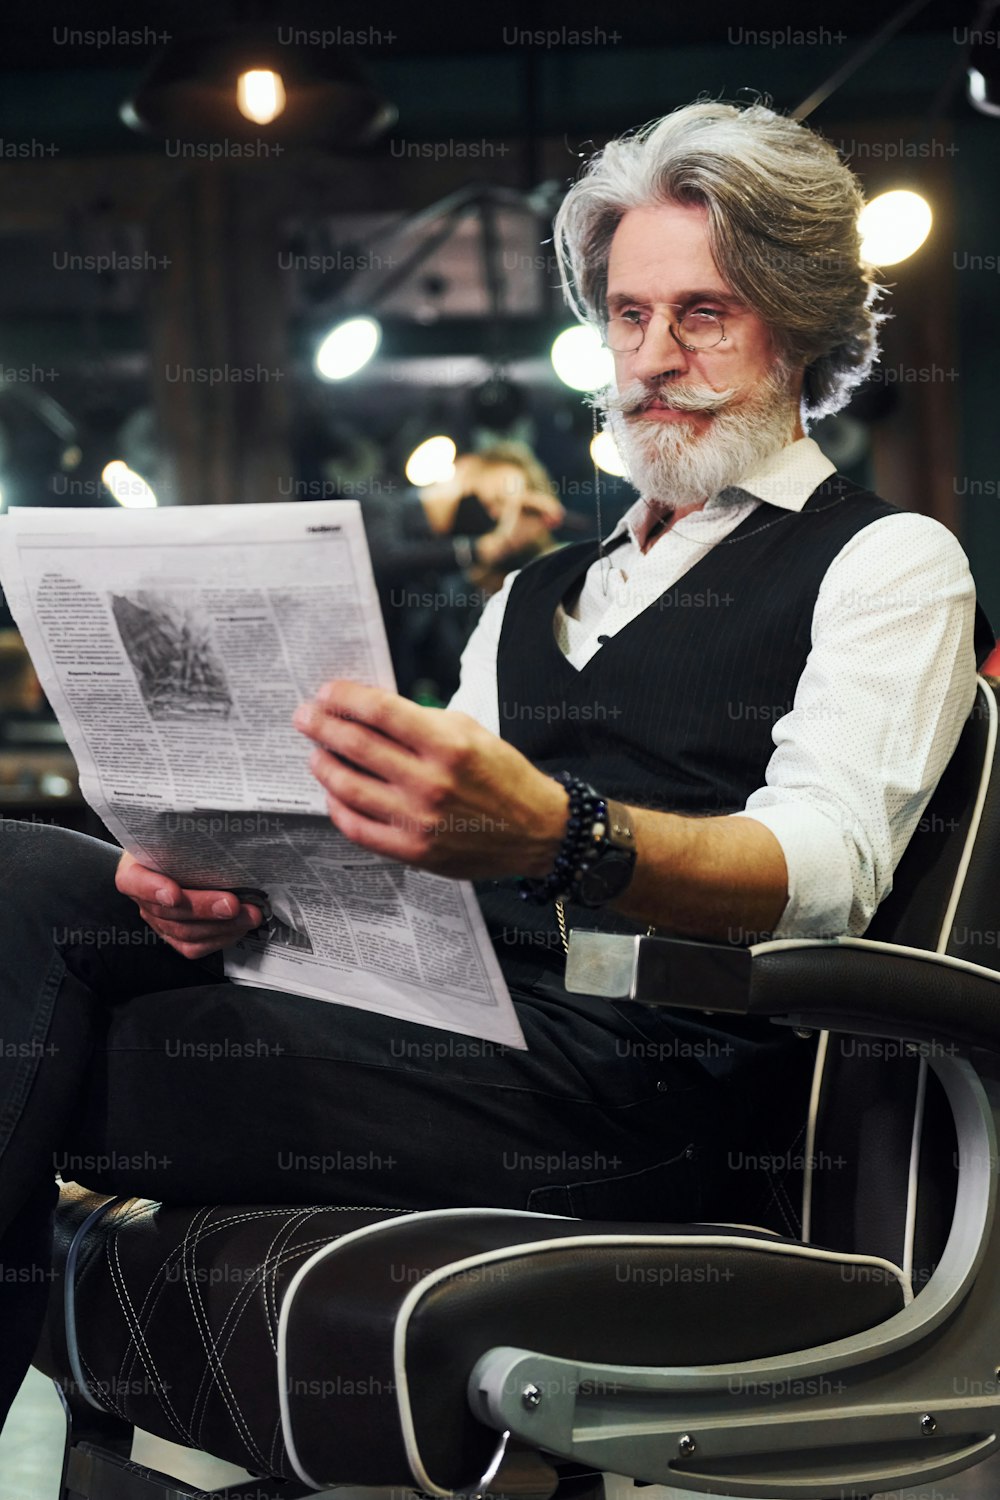 Leggere il giornale. L'uomo anziano moderno alla moda con i capelli grigi e la barba è all'interno.